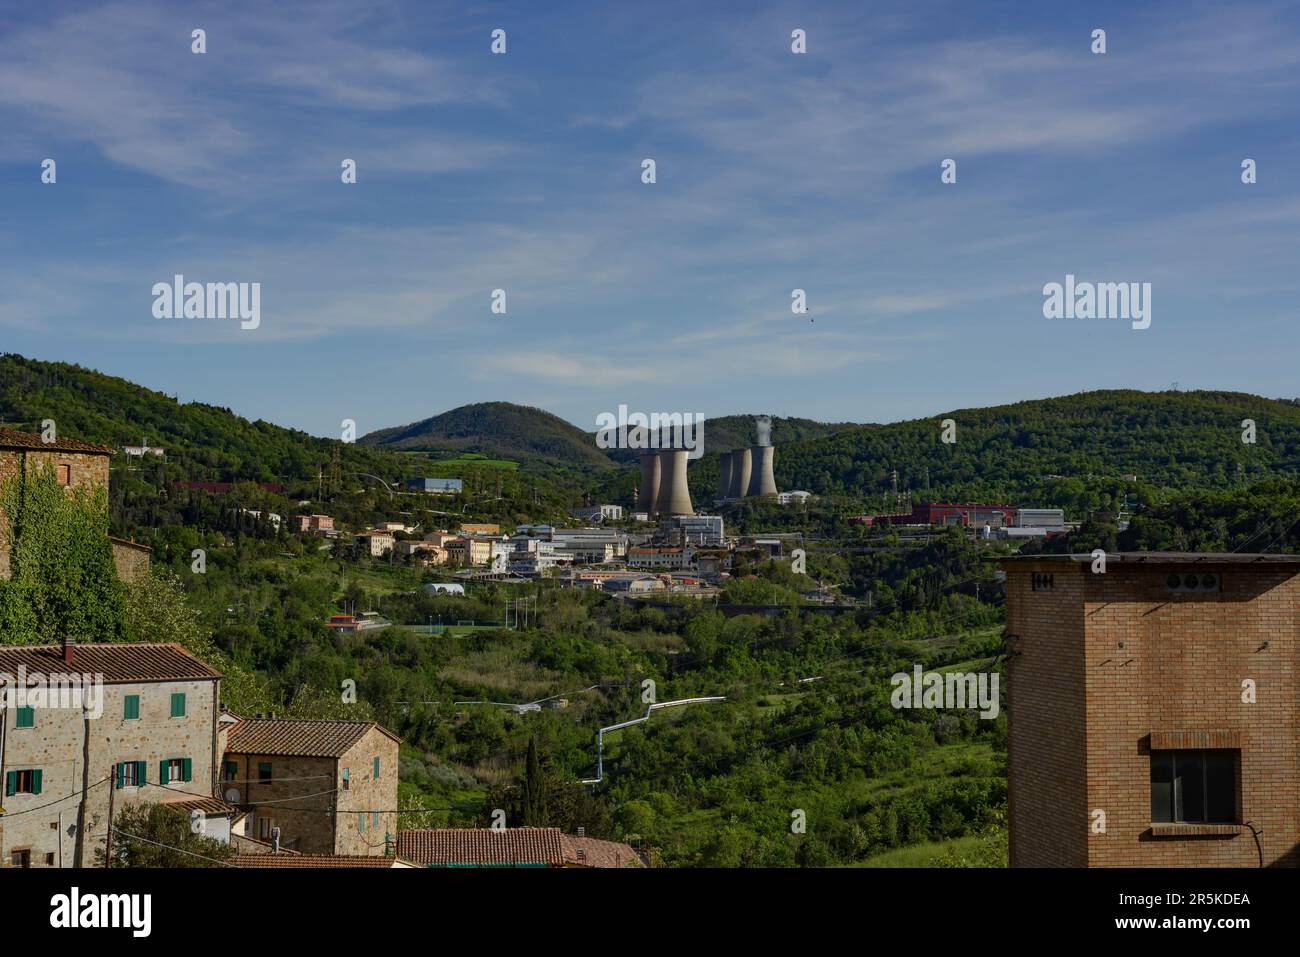 Vue panoramique de la centrale géothermique pour la production d'électricité à Larderello, Pise, Italie Banque D'Images